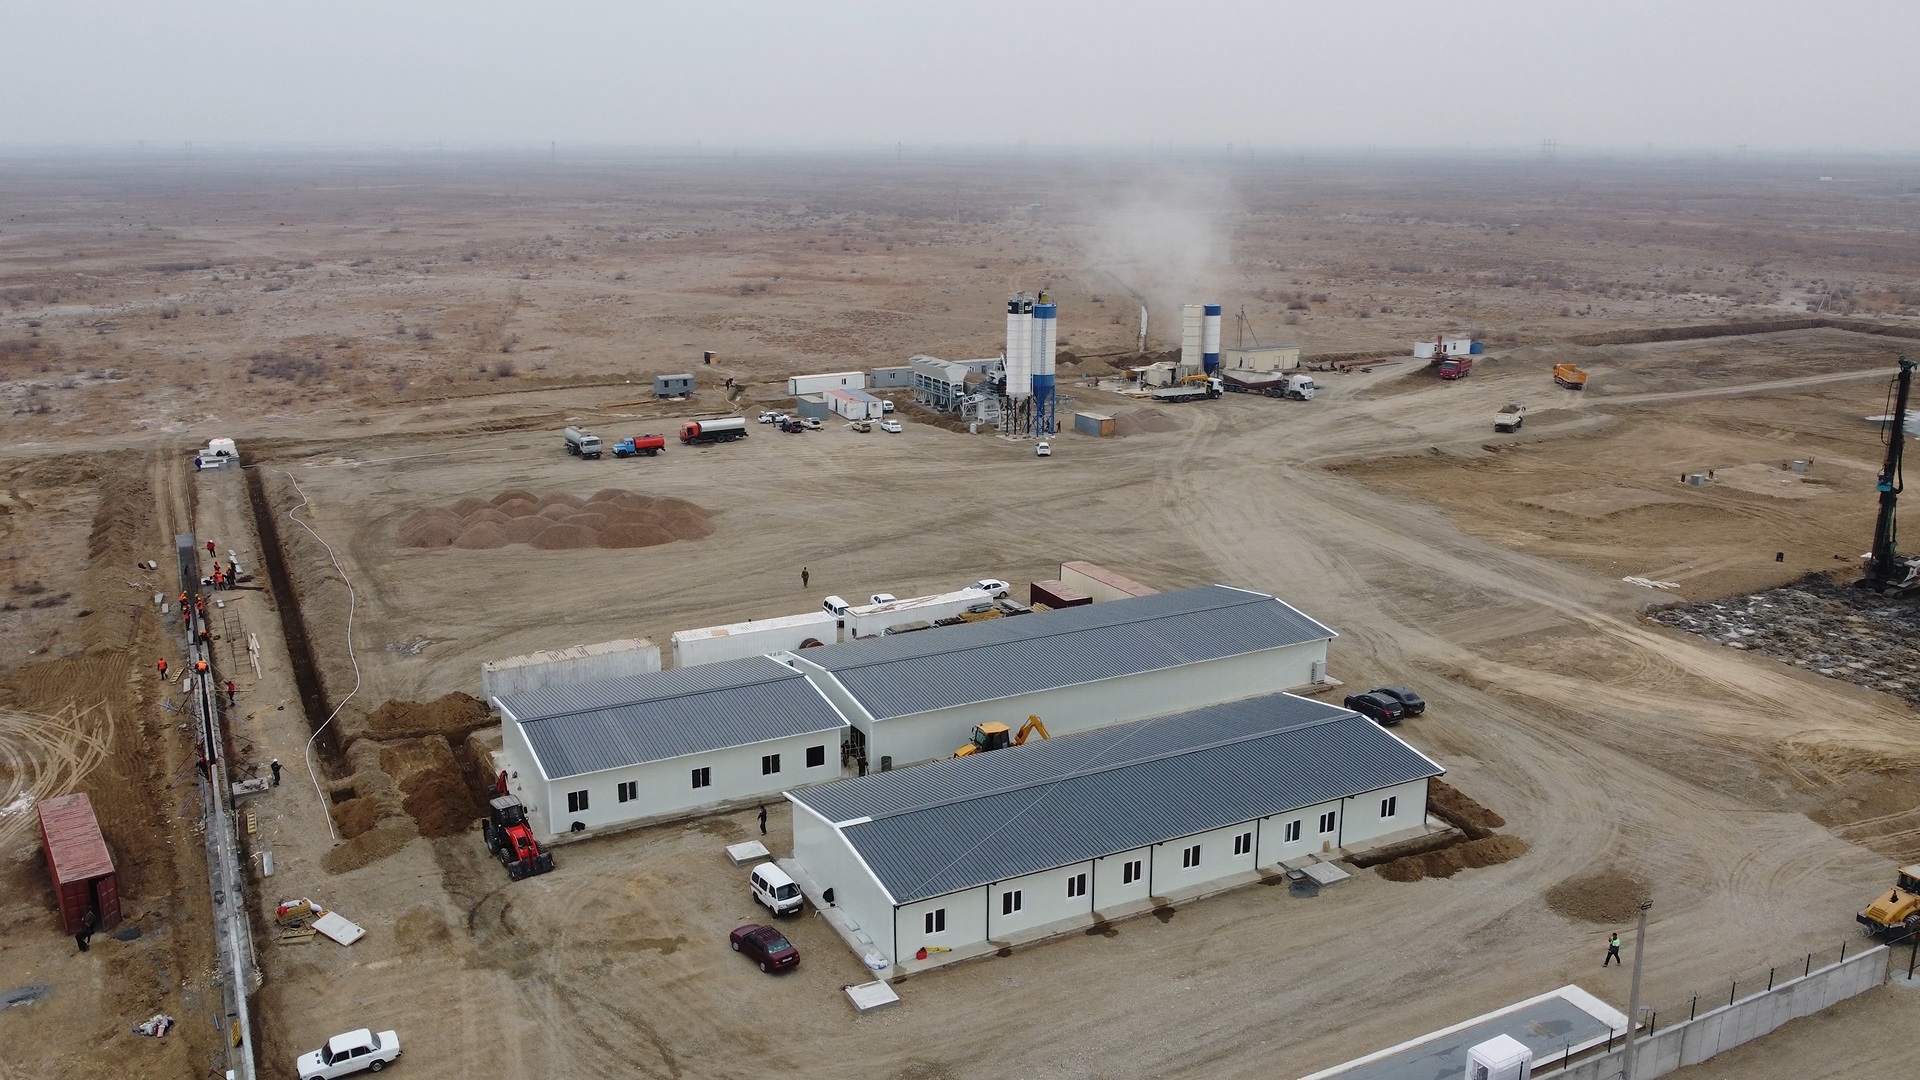 Cengiz Enerji, Özbekistan’daki ikinci doğal gaz çevrim santralinin kurulumuna başladı